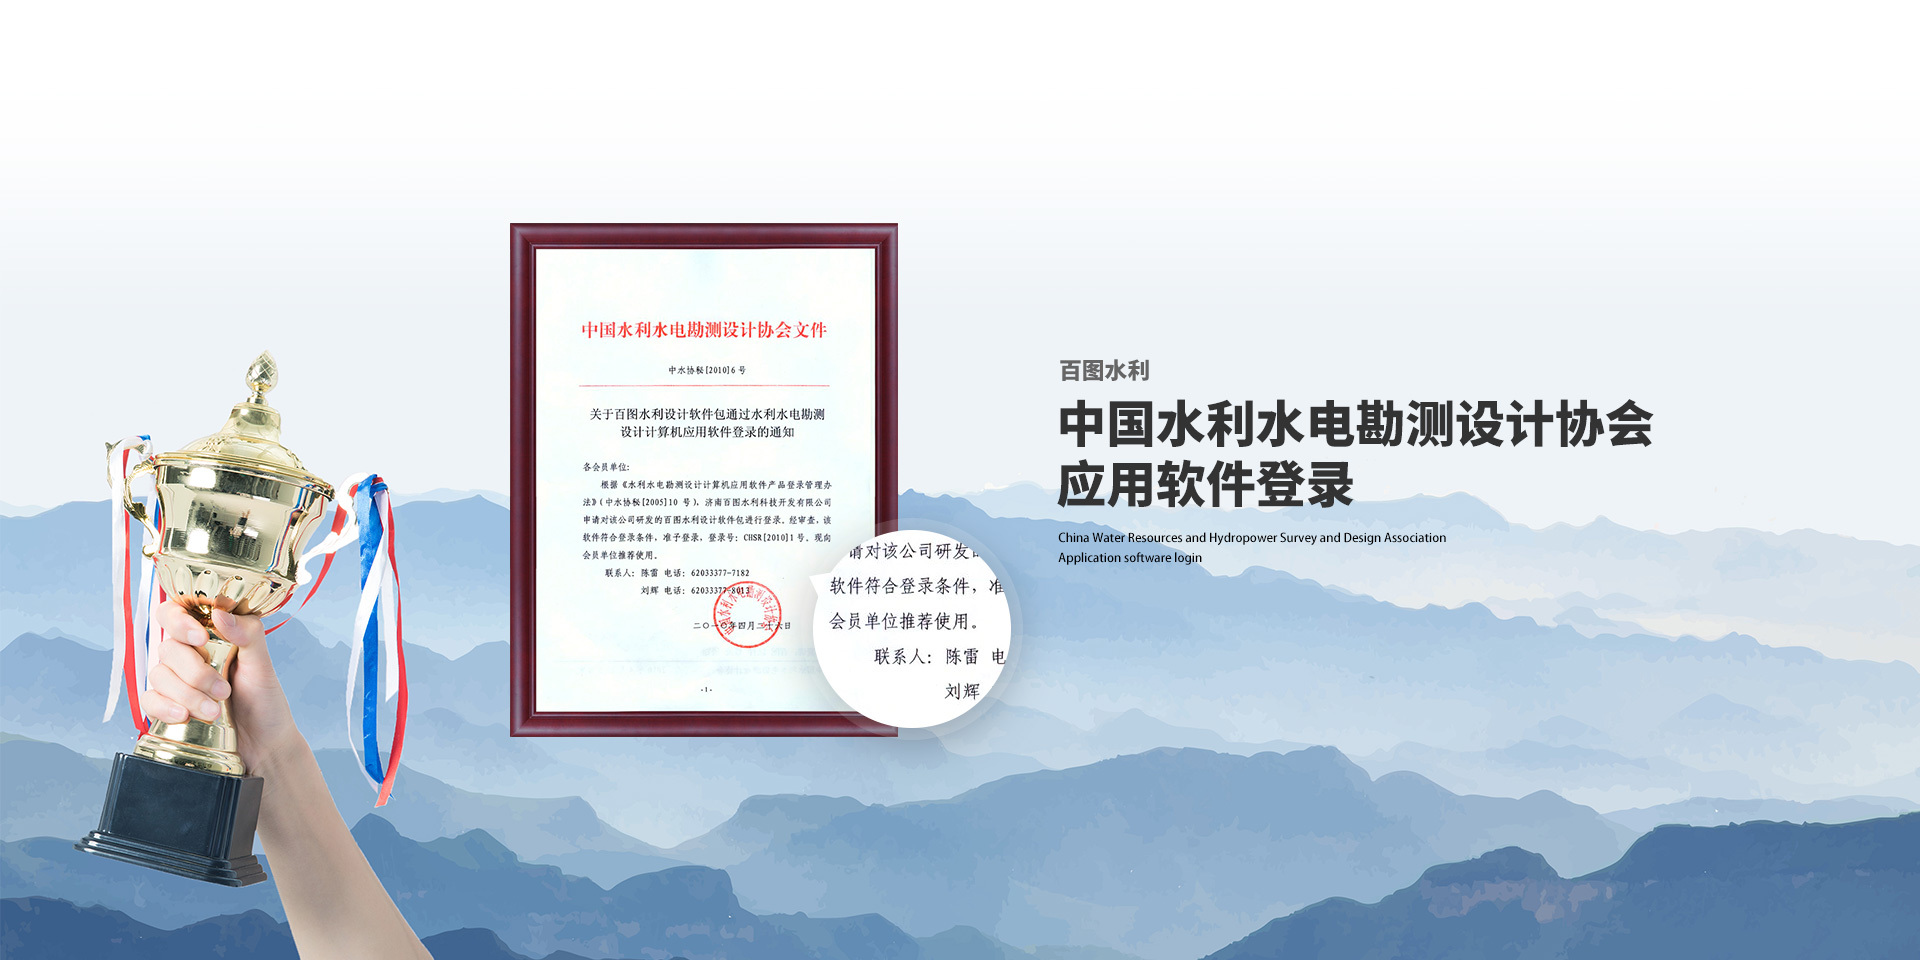 中国水利水电勘测设计协会 应用软件登录